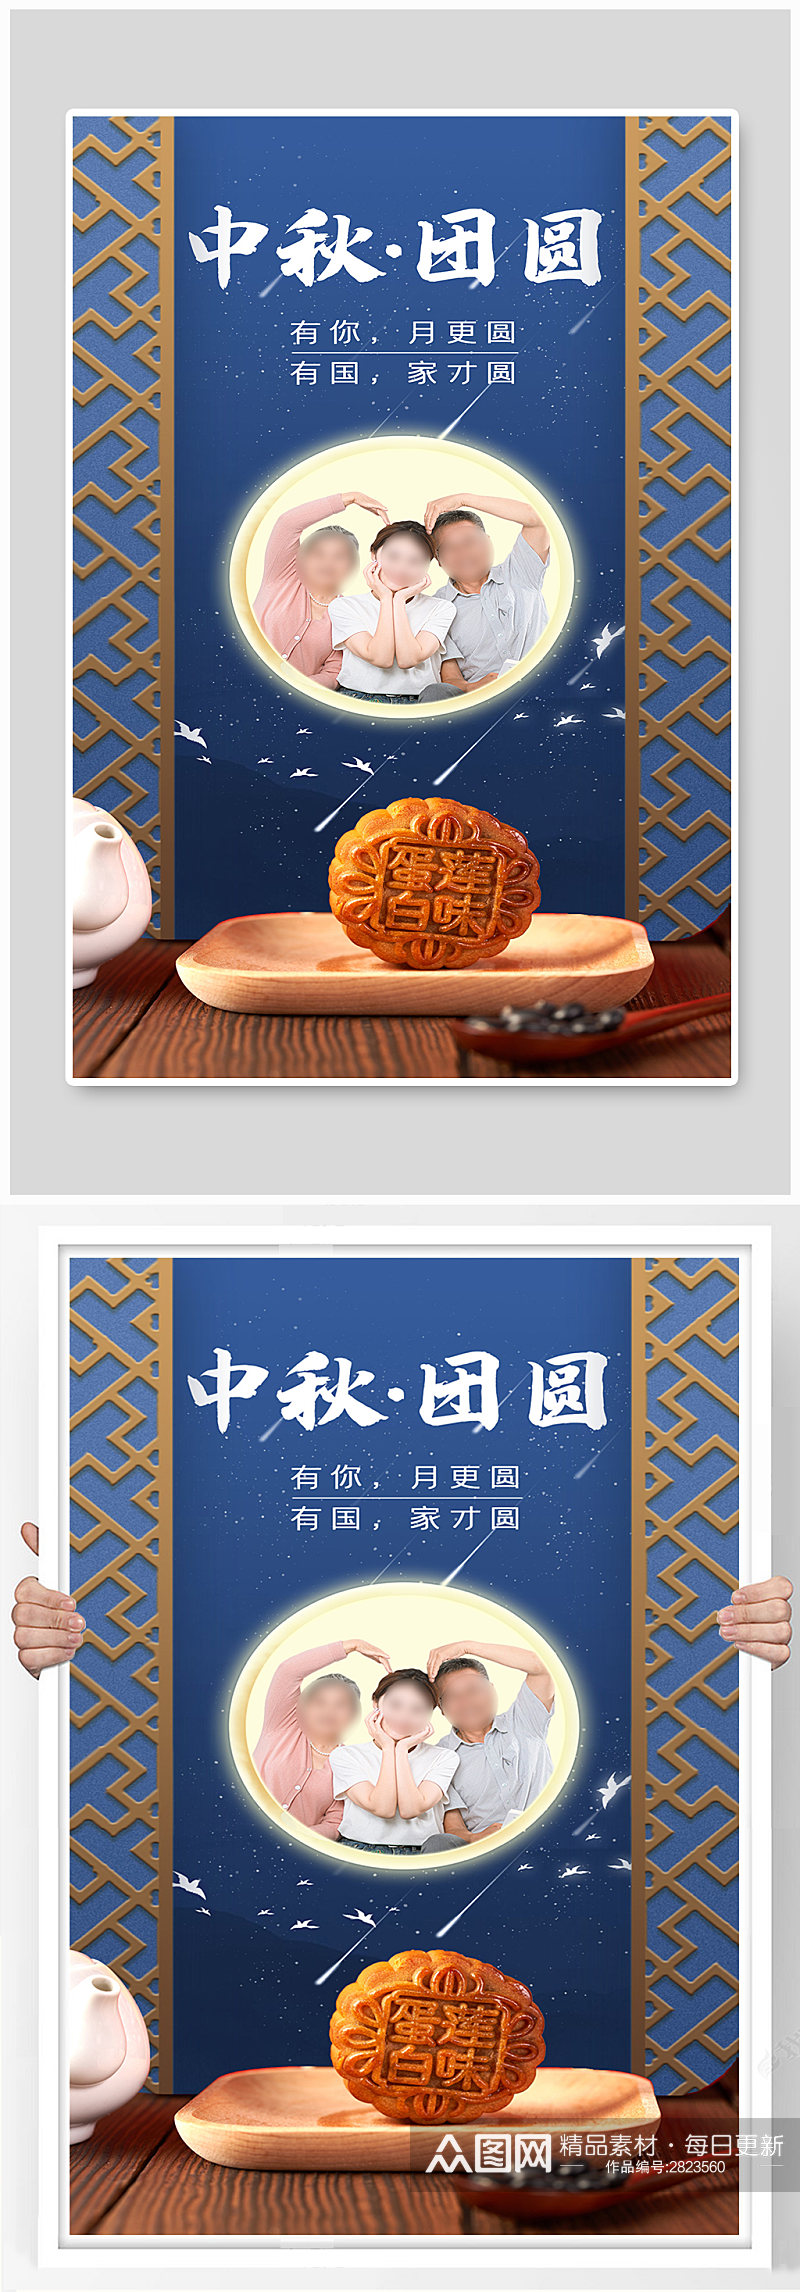 中秋节晒照月饼蓝色简约海报素材